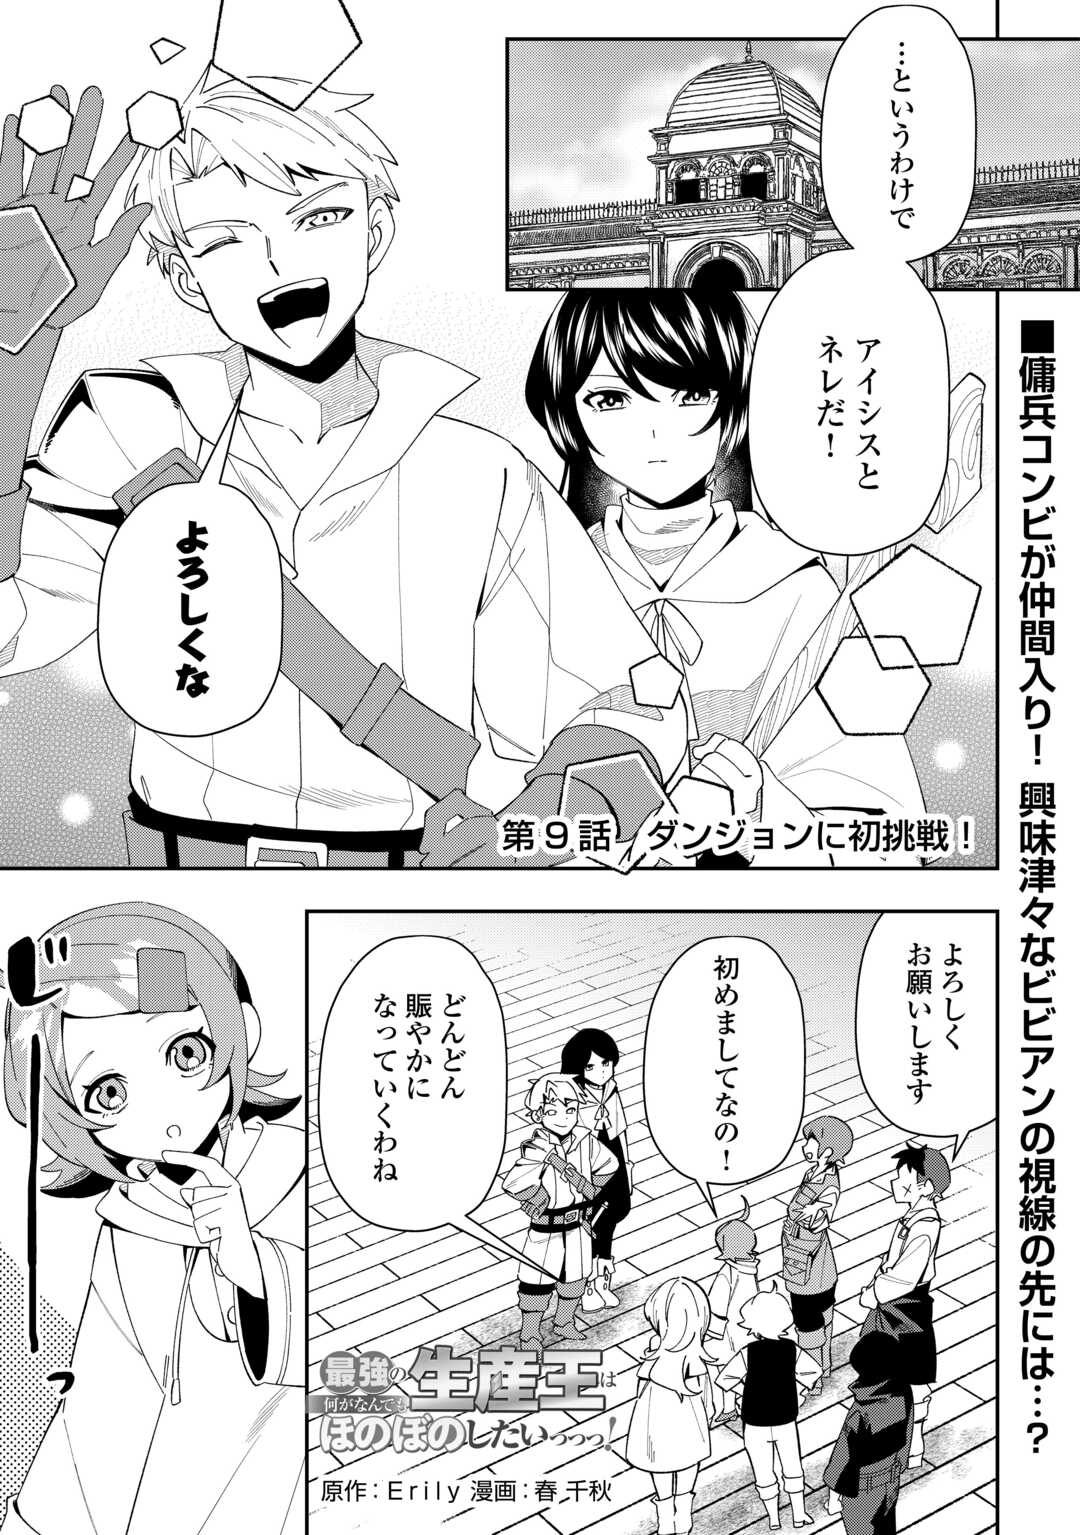 Saikyou no Seisan Ou wa Nani ga Nandemo Honobono Shitaiiii! - Chapter 9 - Page 1